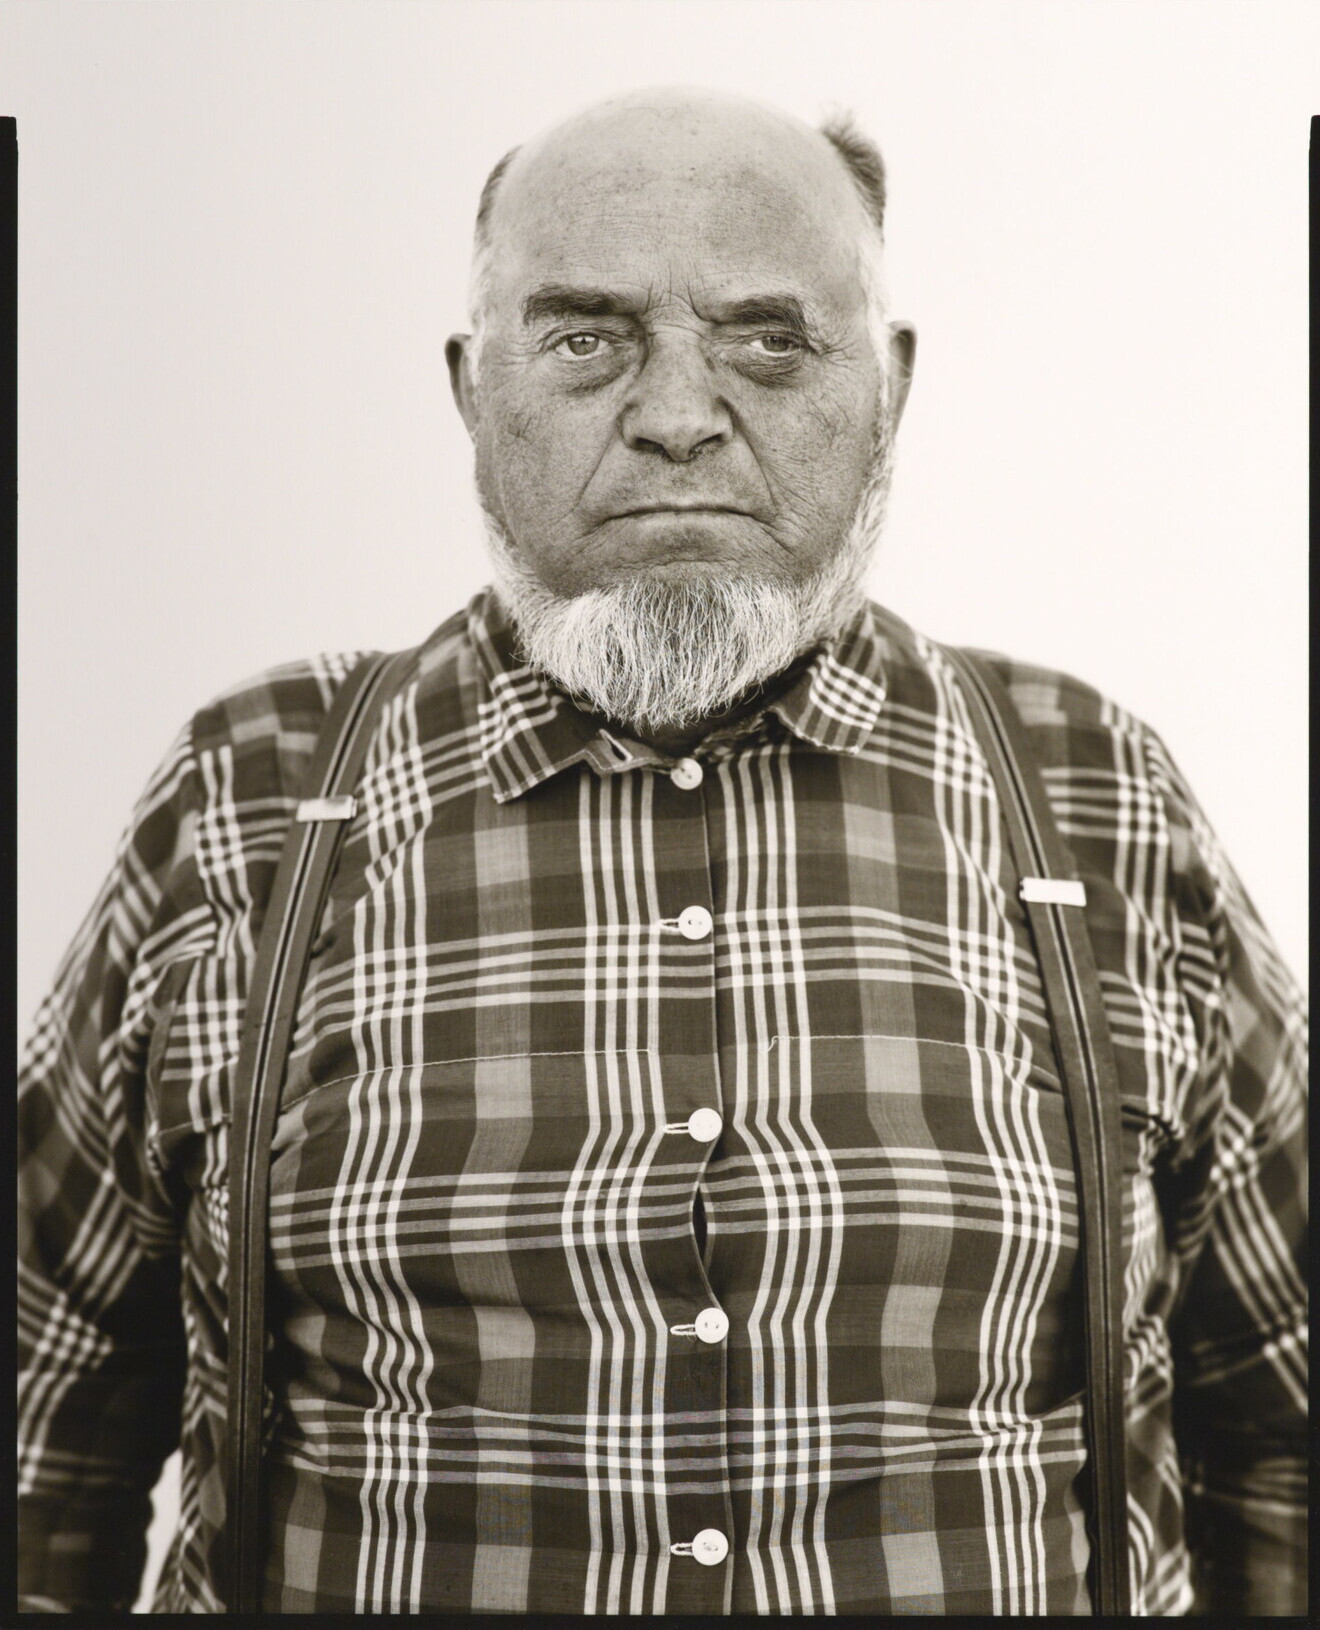 Дэвид Вурц, кладбищенский работник, колония гуттеритов, Честер, Монтана, 1983 г. Фотограф Ричард Аведон